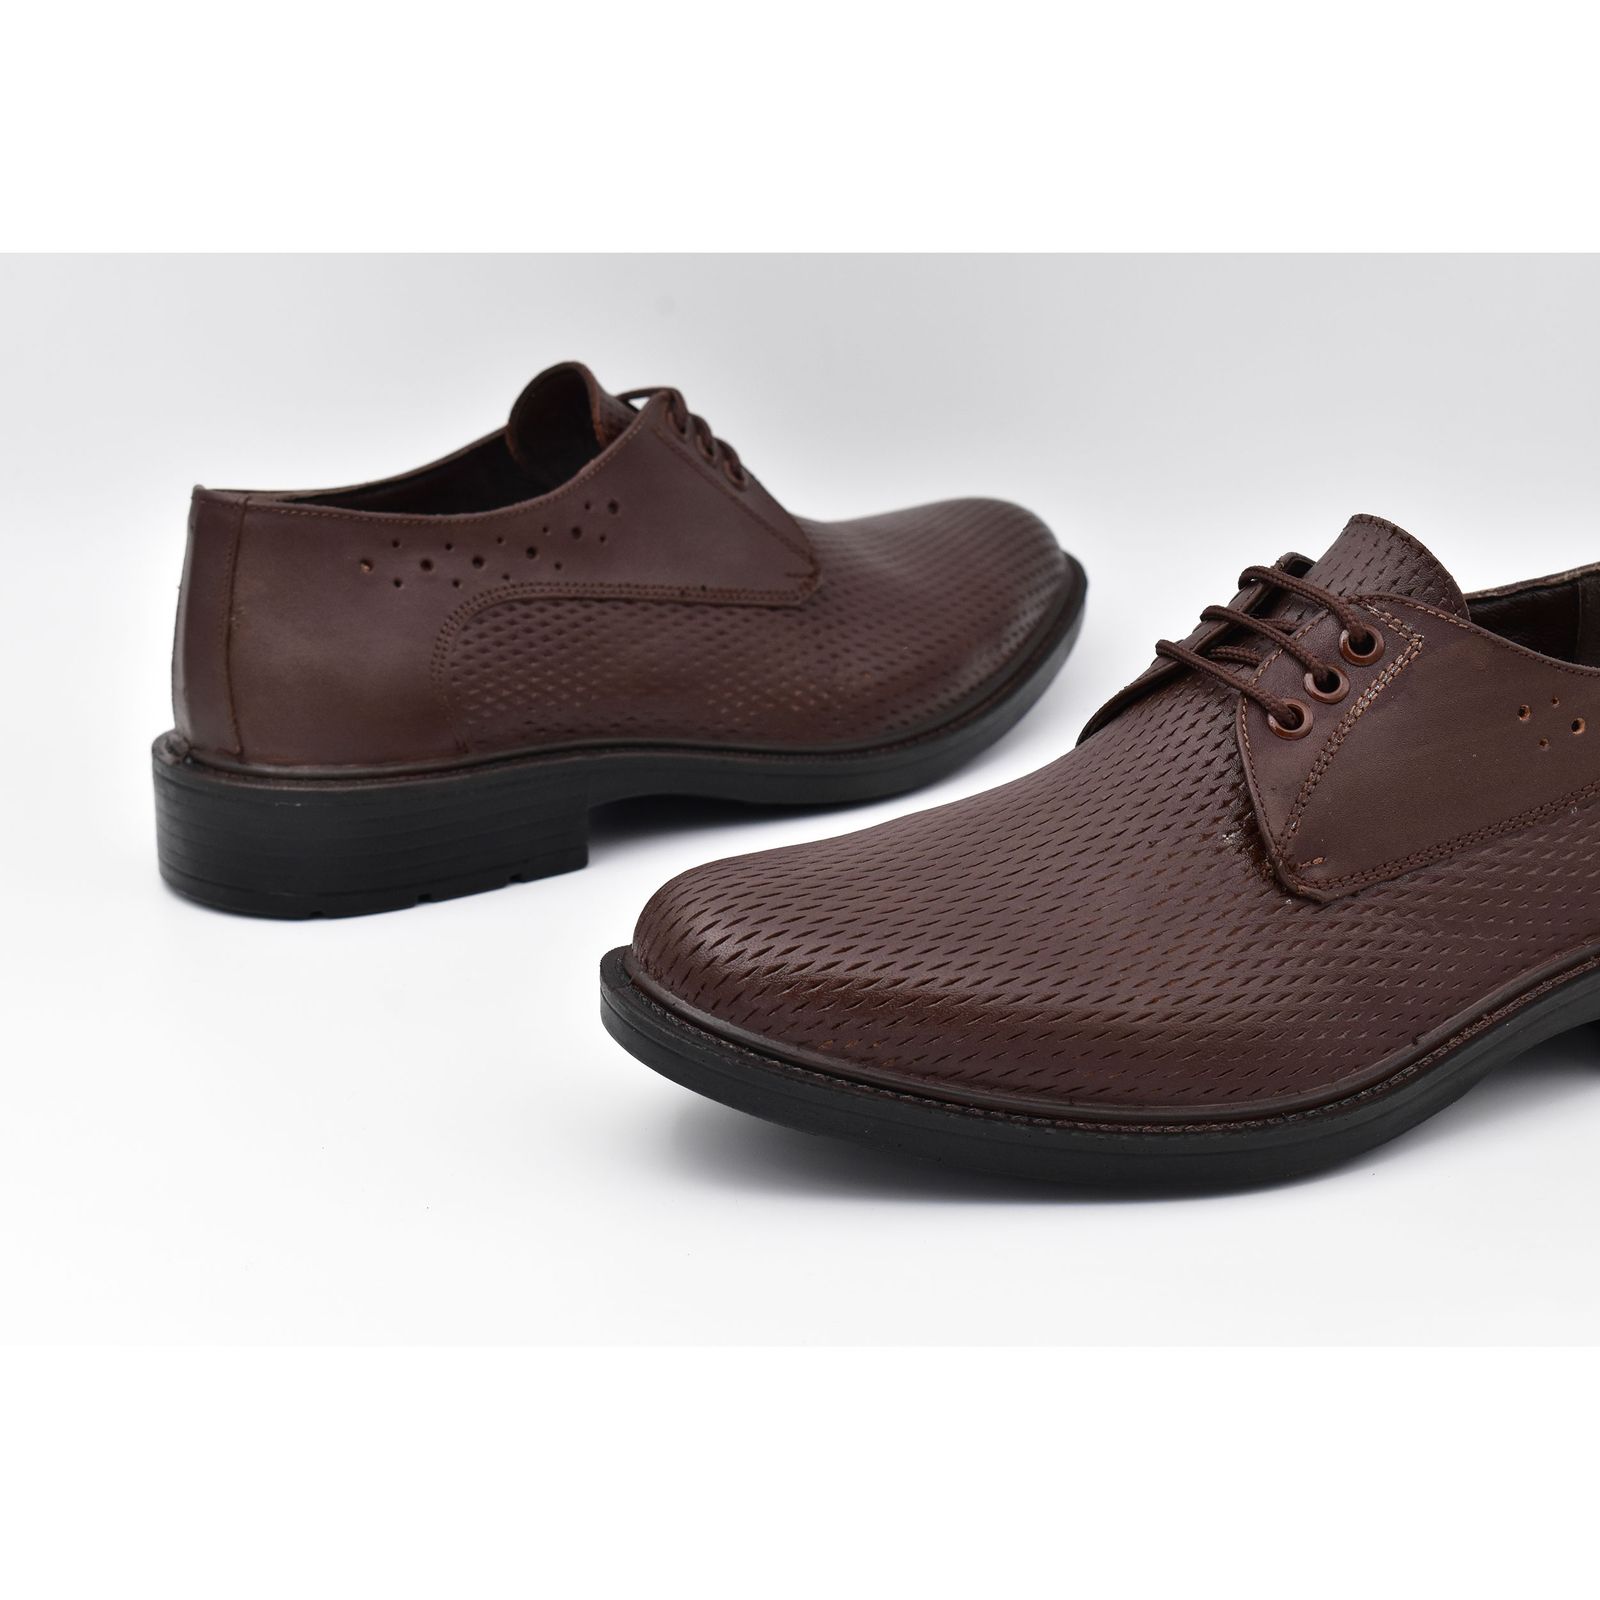 کفش مردانه پاما مدل Morano کد G1183 -  - 8